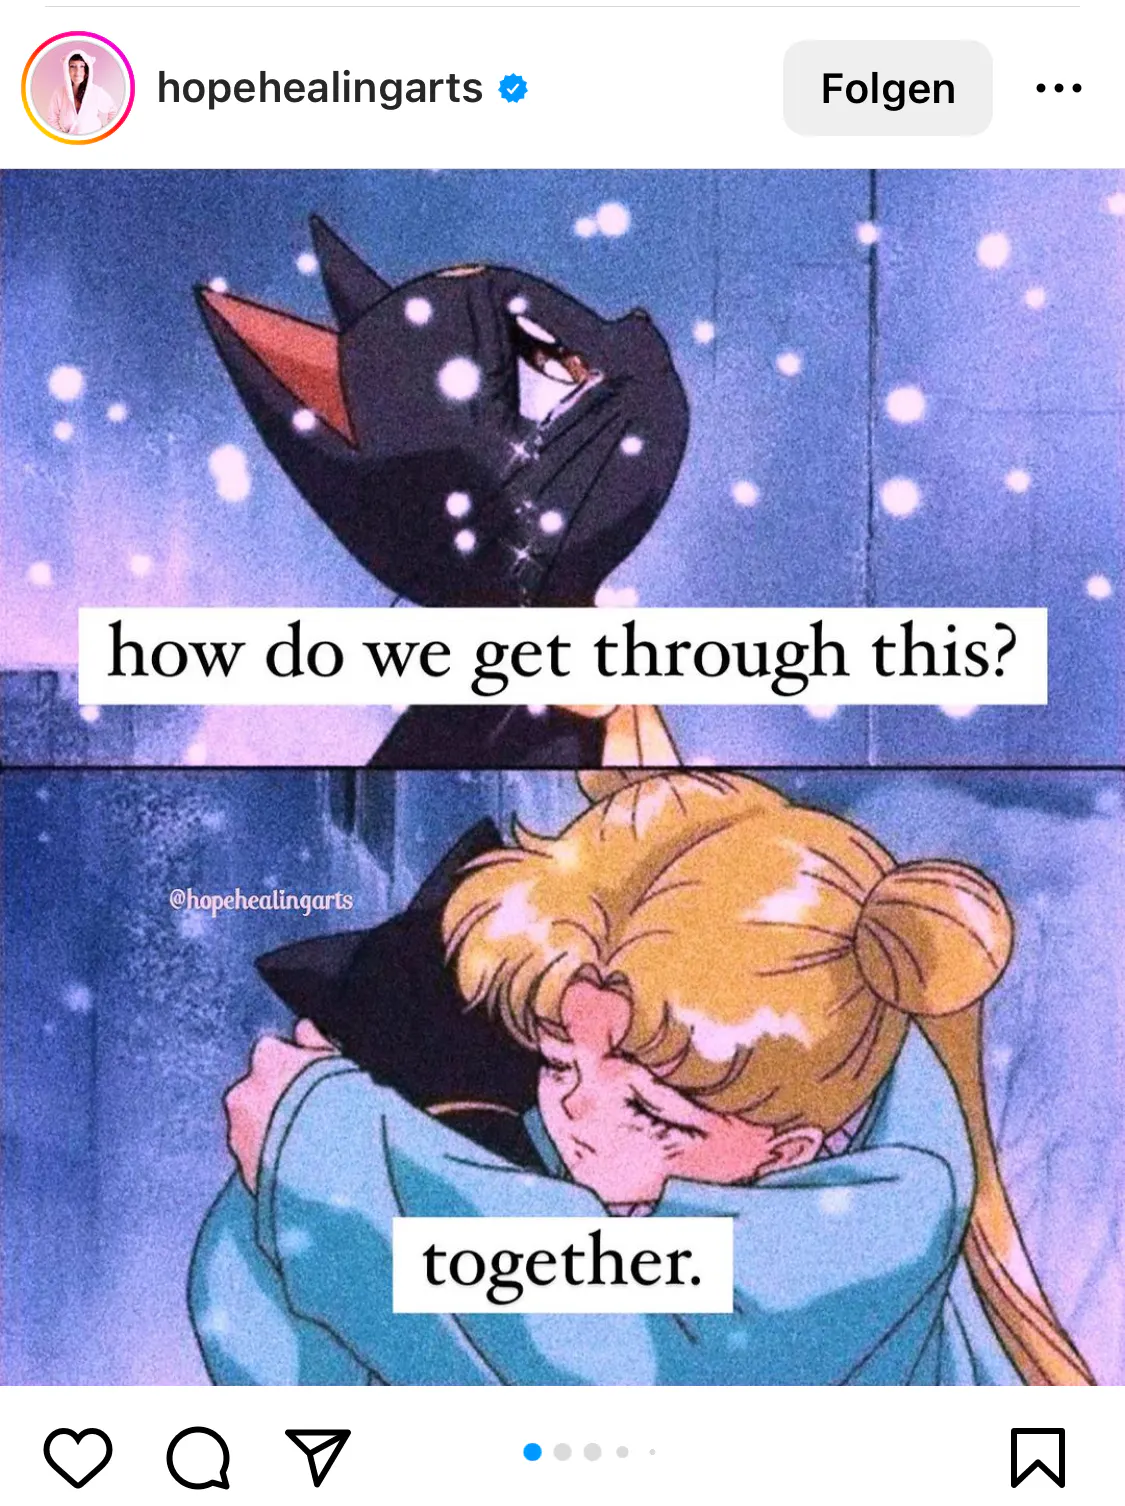 Screenshot von einem Instagram-Post. Es ist ein Meme für die Heilung. Luna, die schwarze Katze von Sailor Moon, schaut traurig nach oben, es schneit. Sie fragt: how do we get through this? und im zweiten Bild unten umarmen sich Sailor Moon und Luna, und drunter steht: together. Bild vom instagram-Account hopehealingarts.